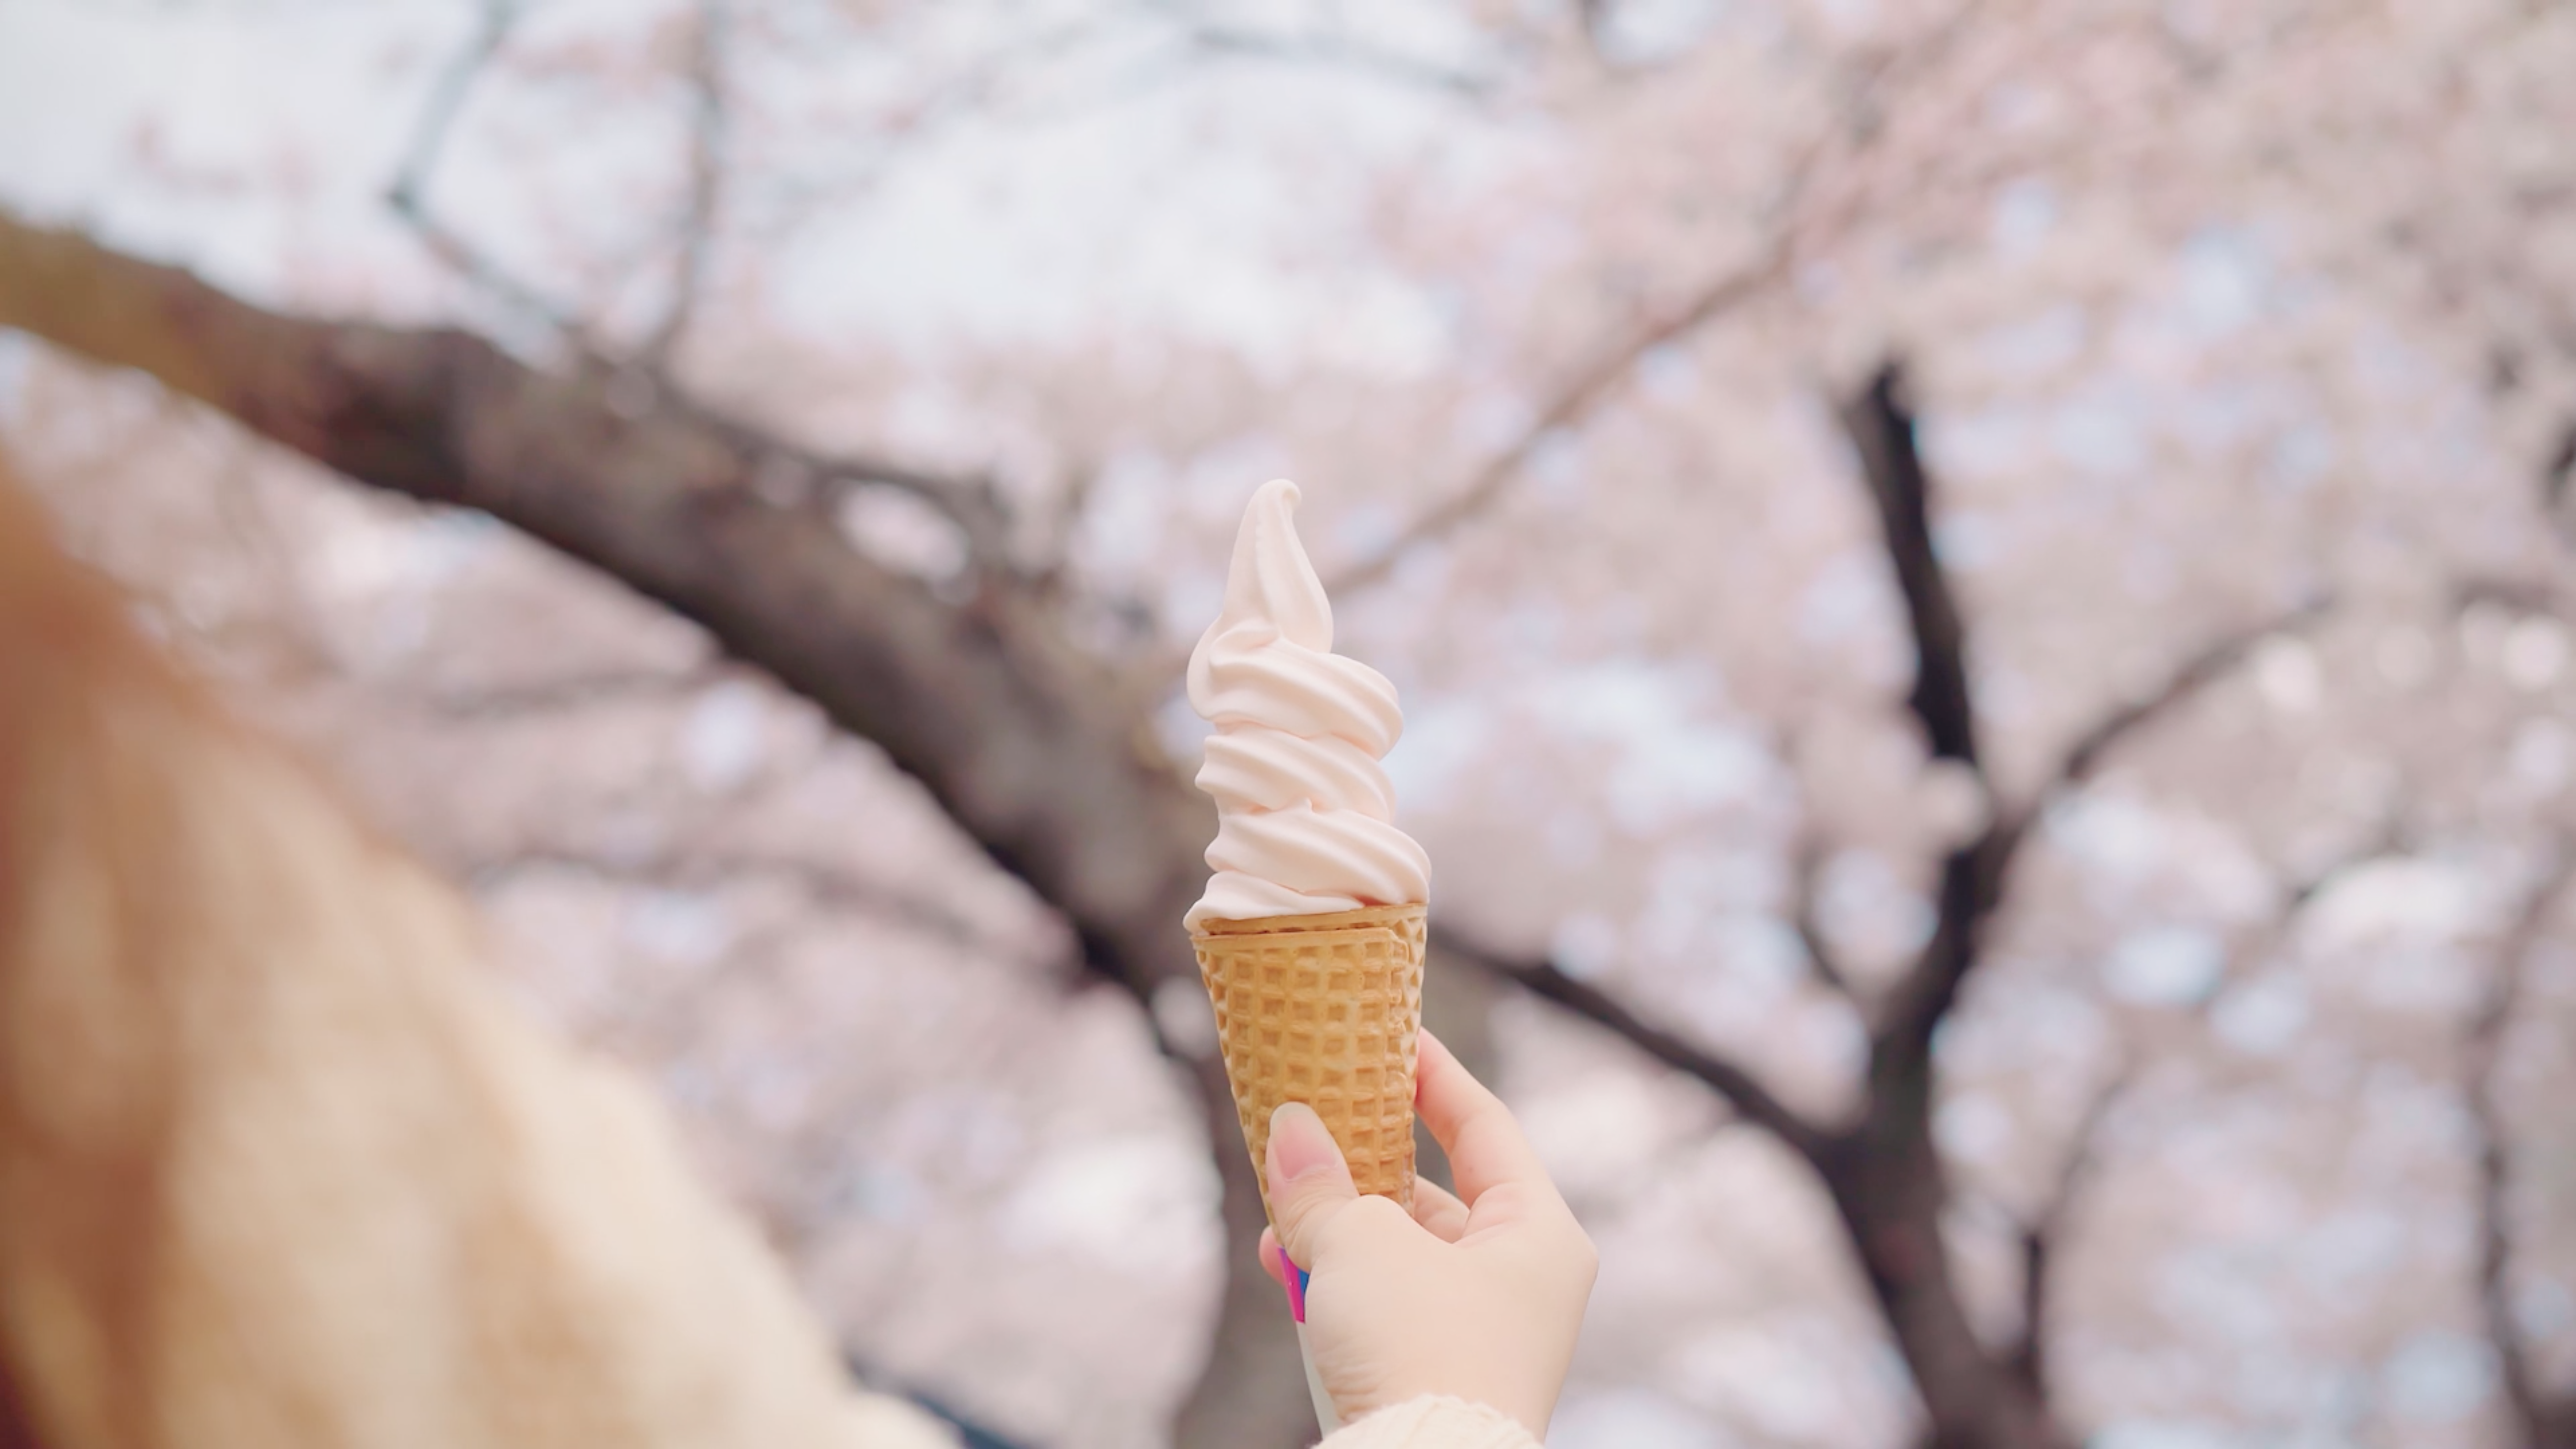 Beautiful Ice cream in sharp focus